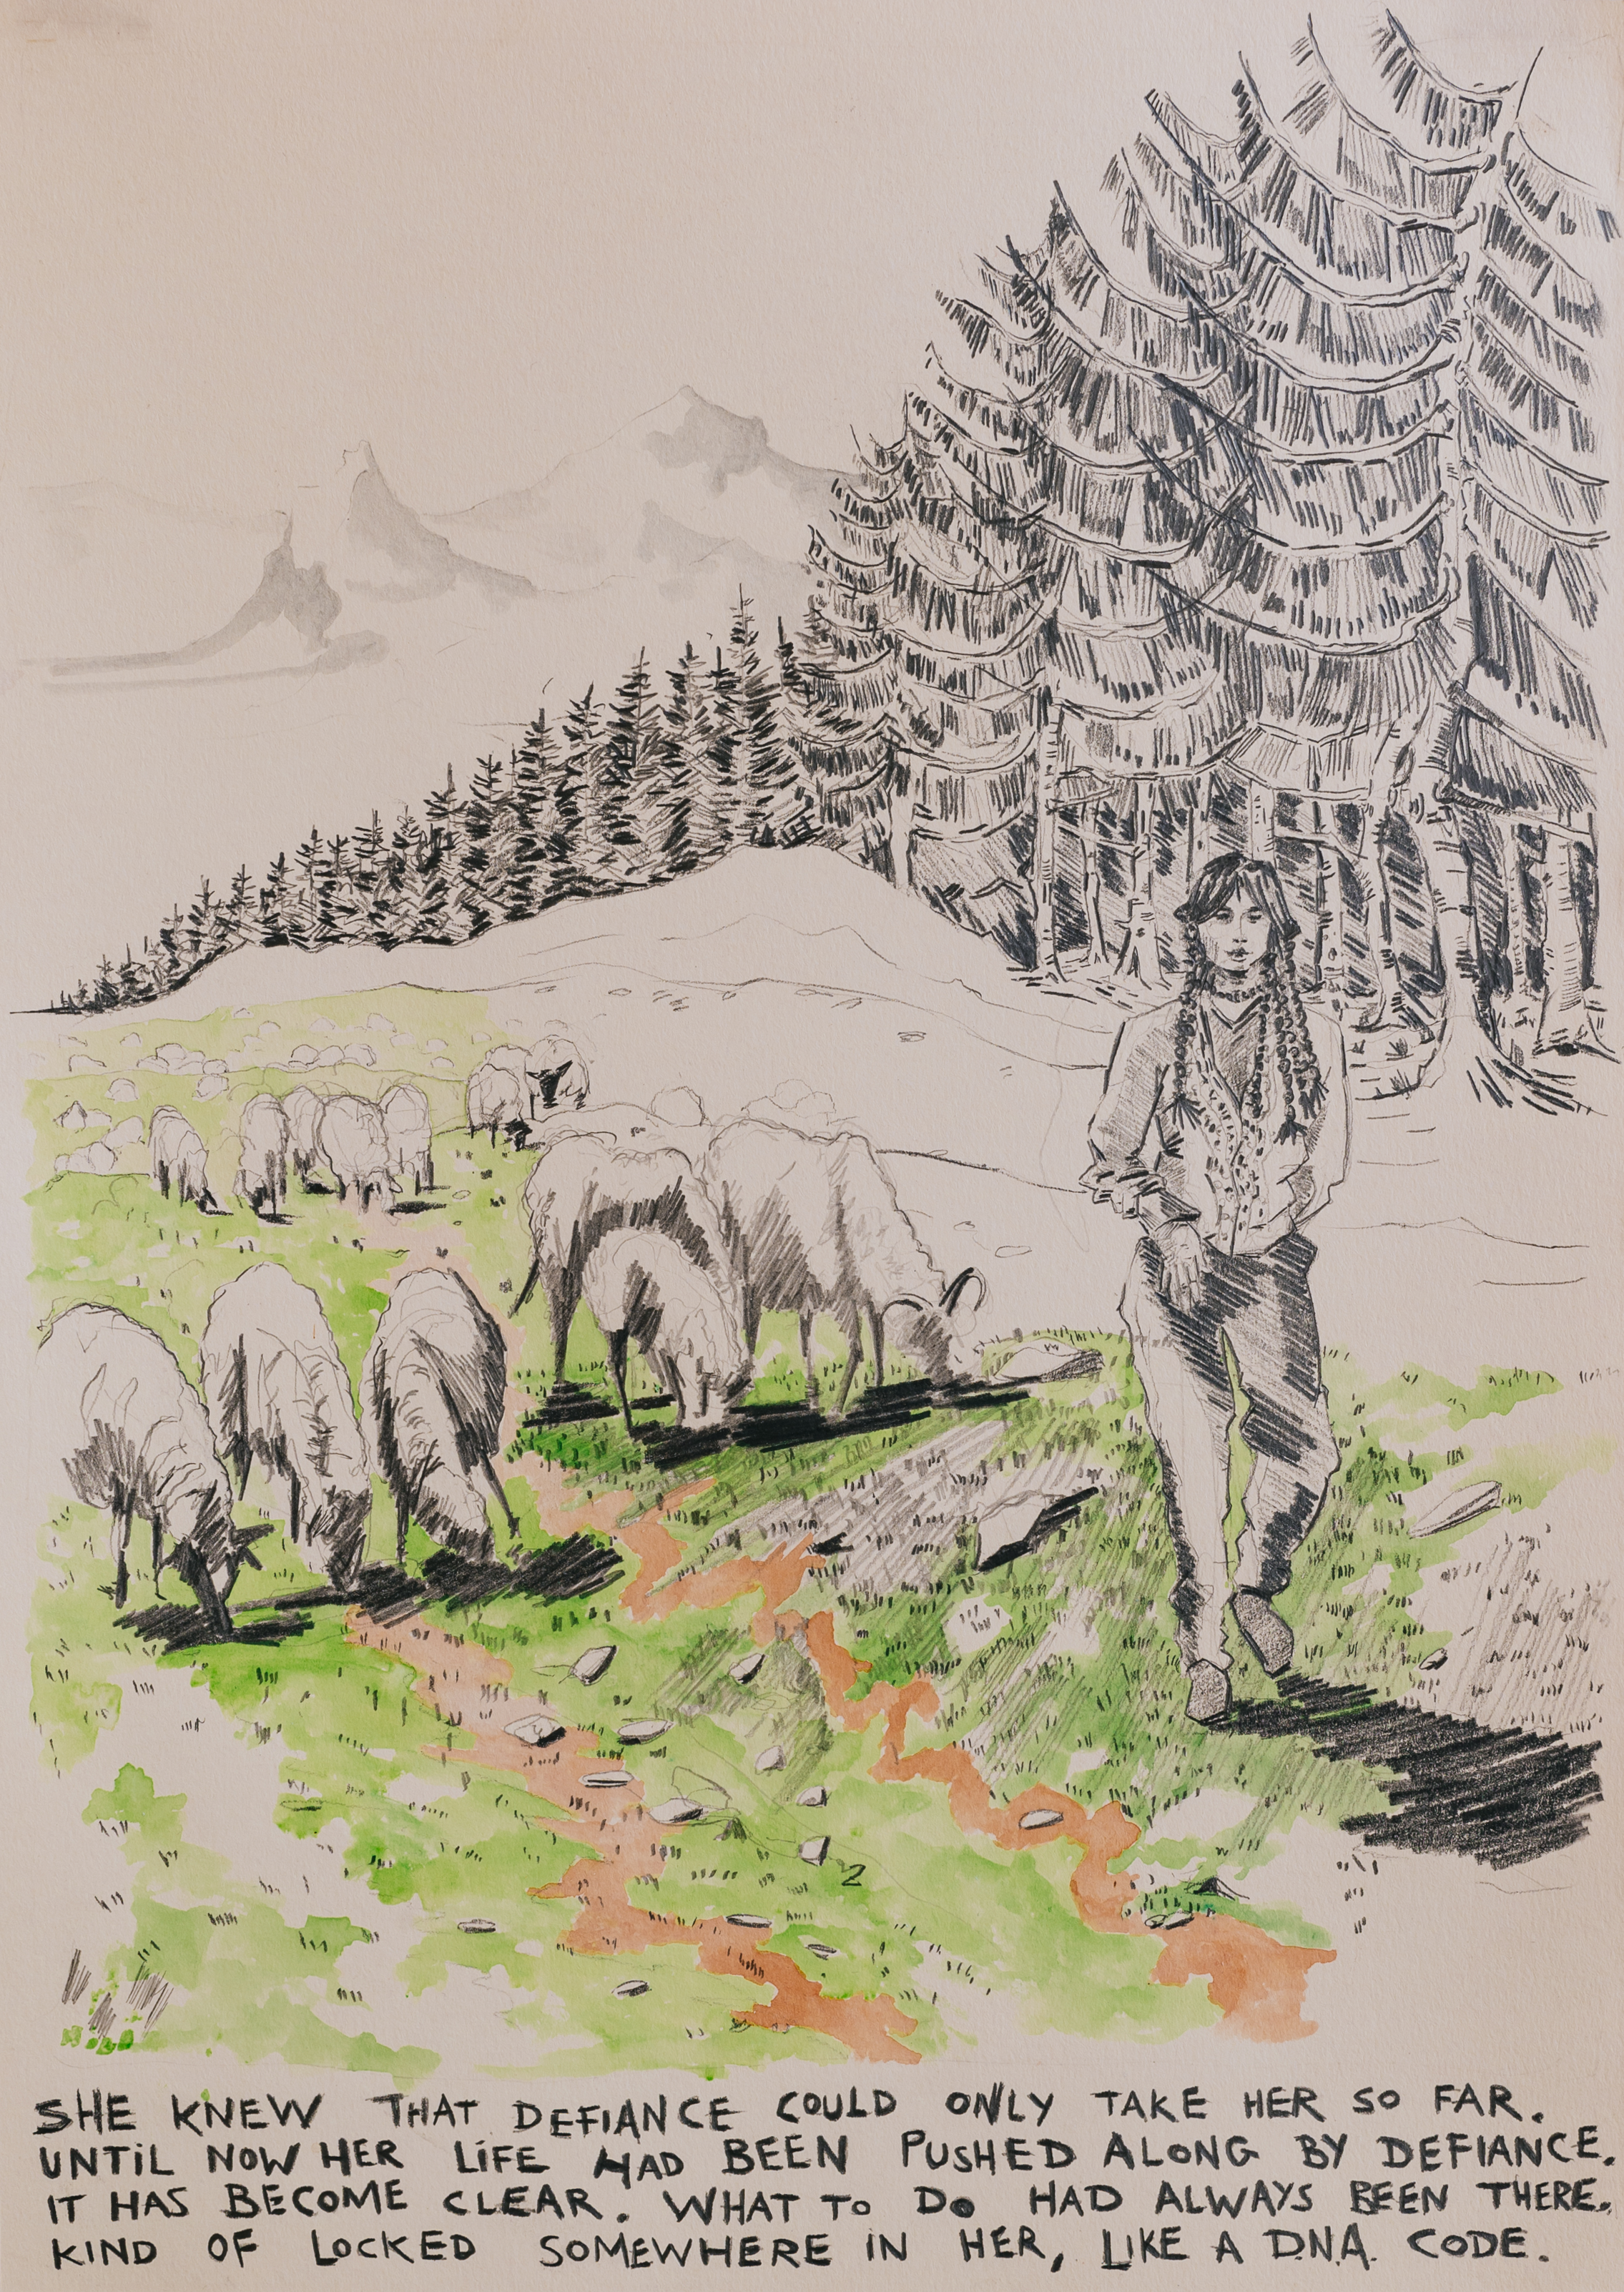 Shepherd 2023, Bleistift und Aquarell auf Papier, 42 x 29,7 cm, gerahmt 2023, oil on paper, 42 x 29,7 cm, framed